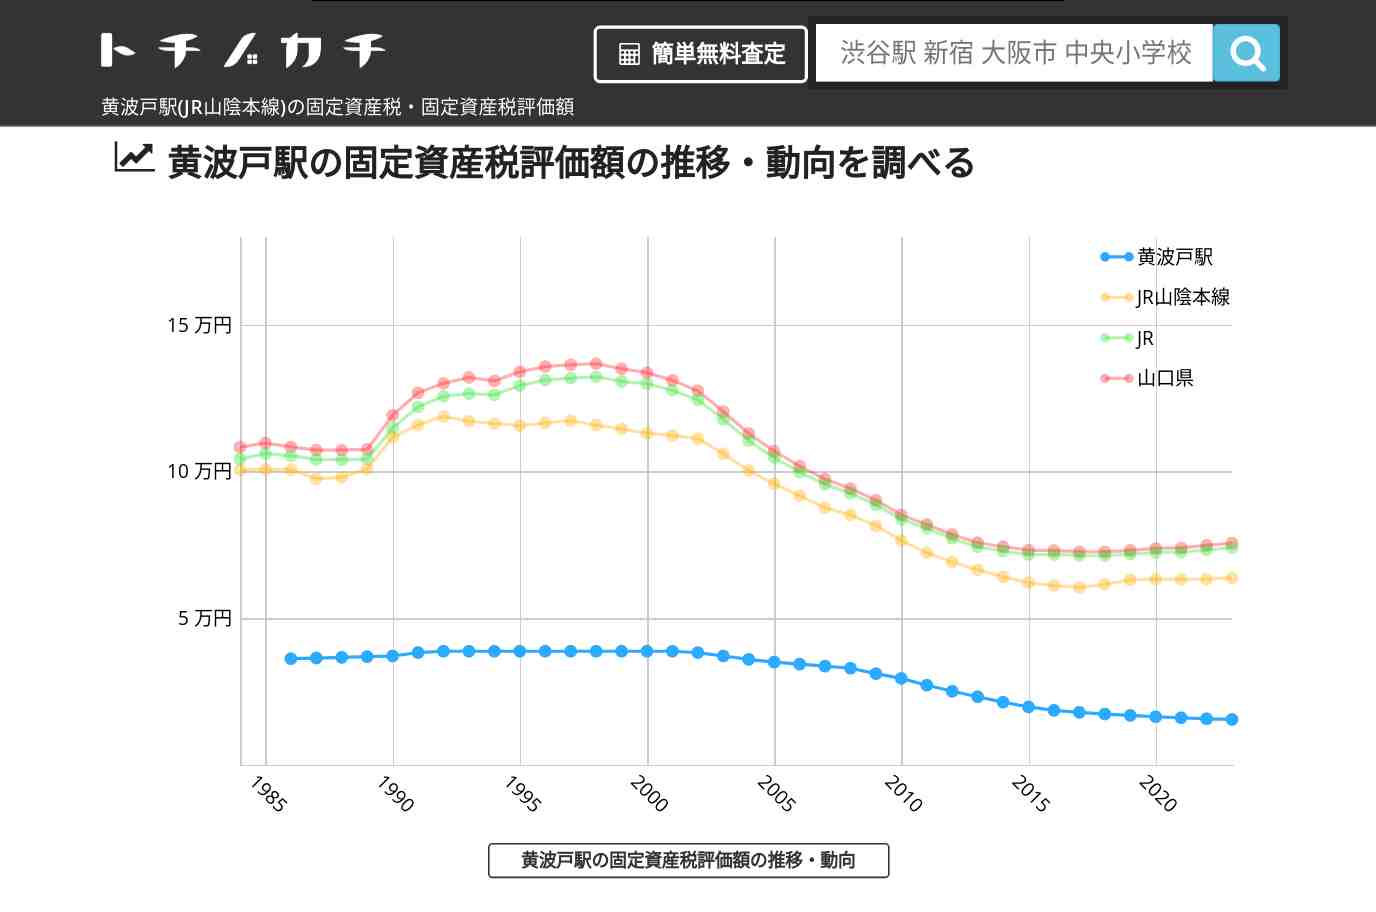 黄波戸駅(JR山陰本線)の固定資産税・固定資産税評価額 | トチノカチ